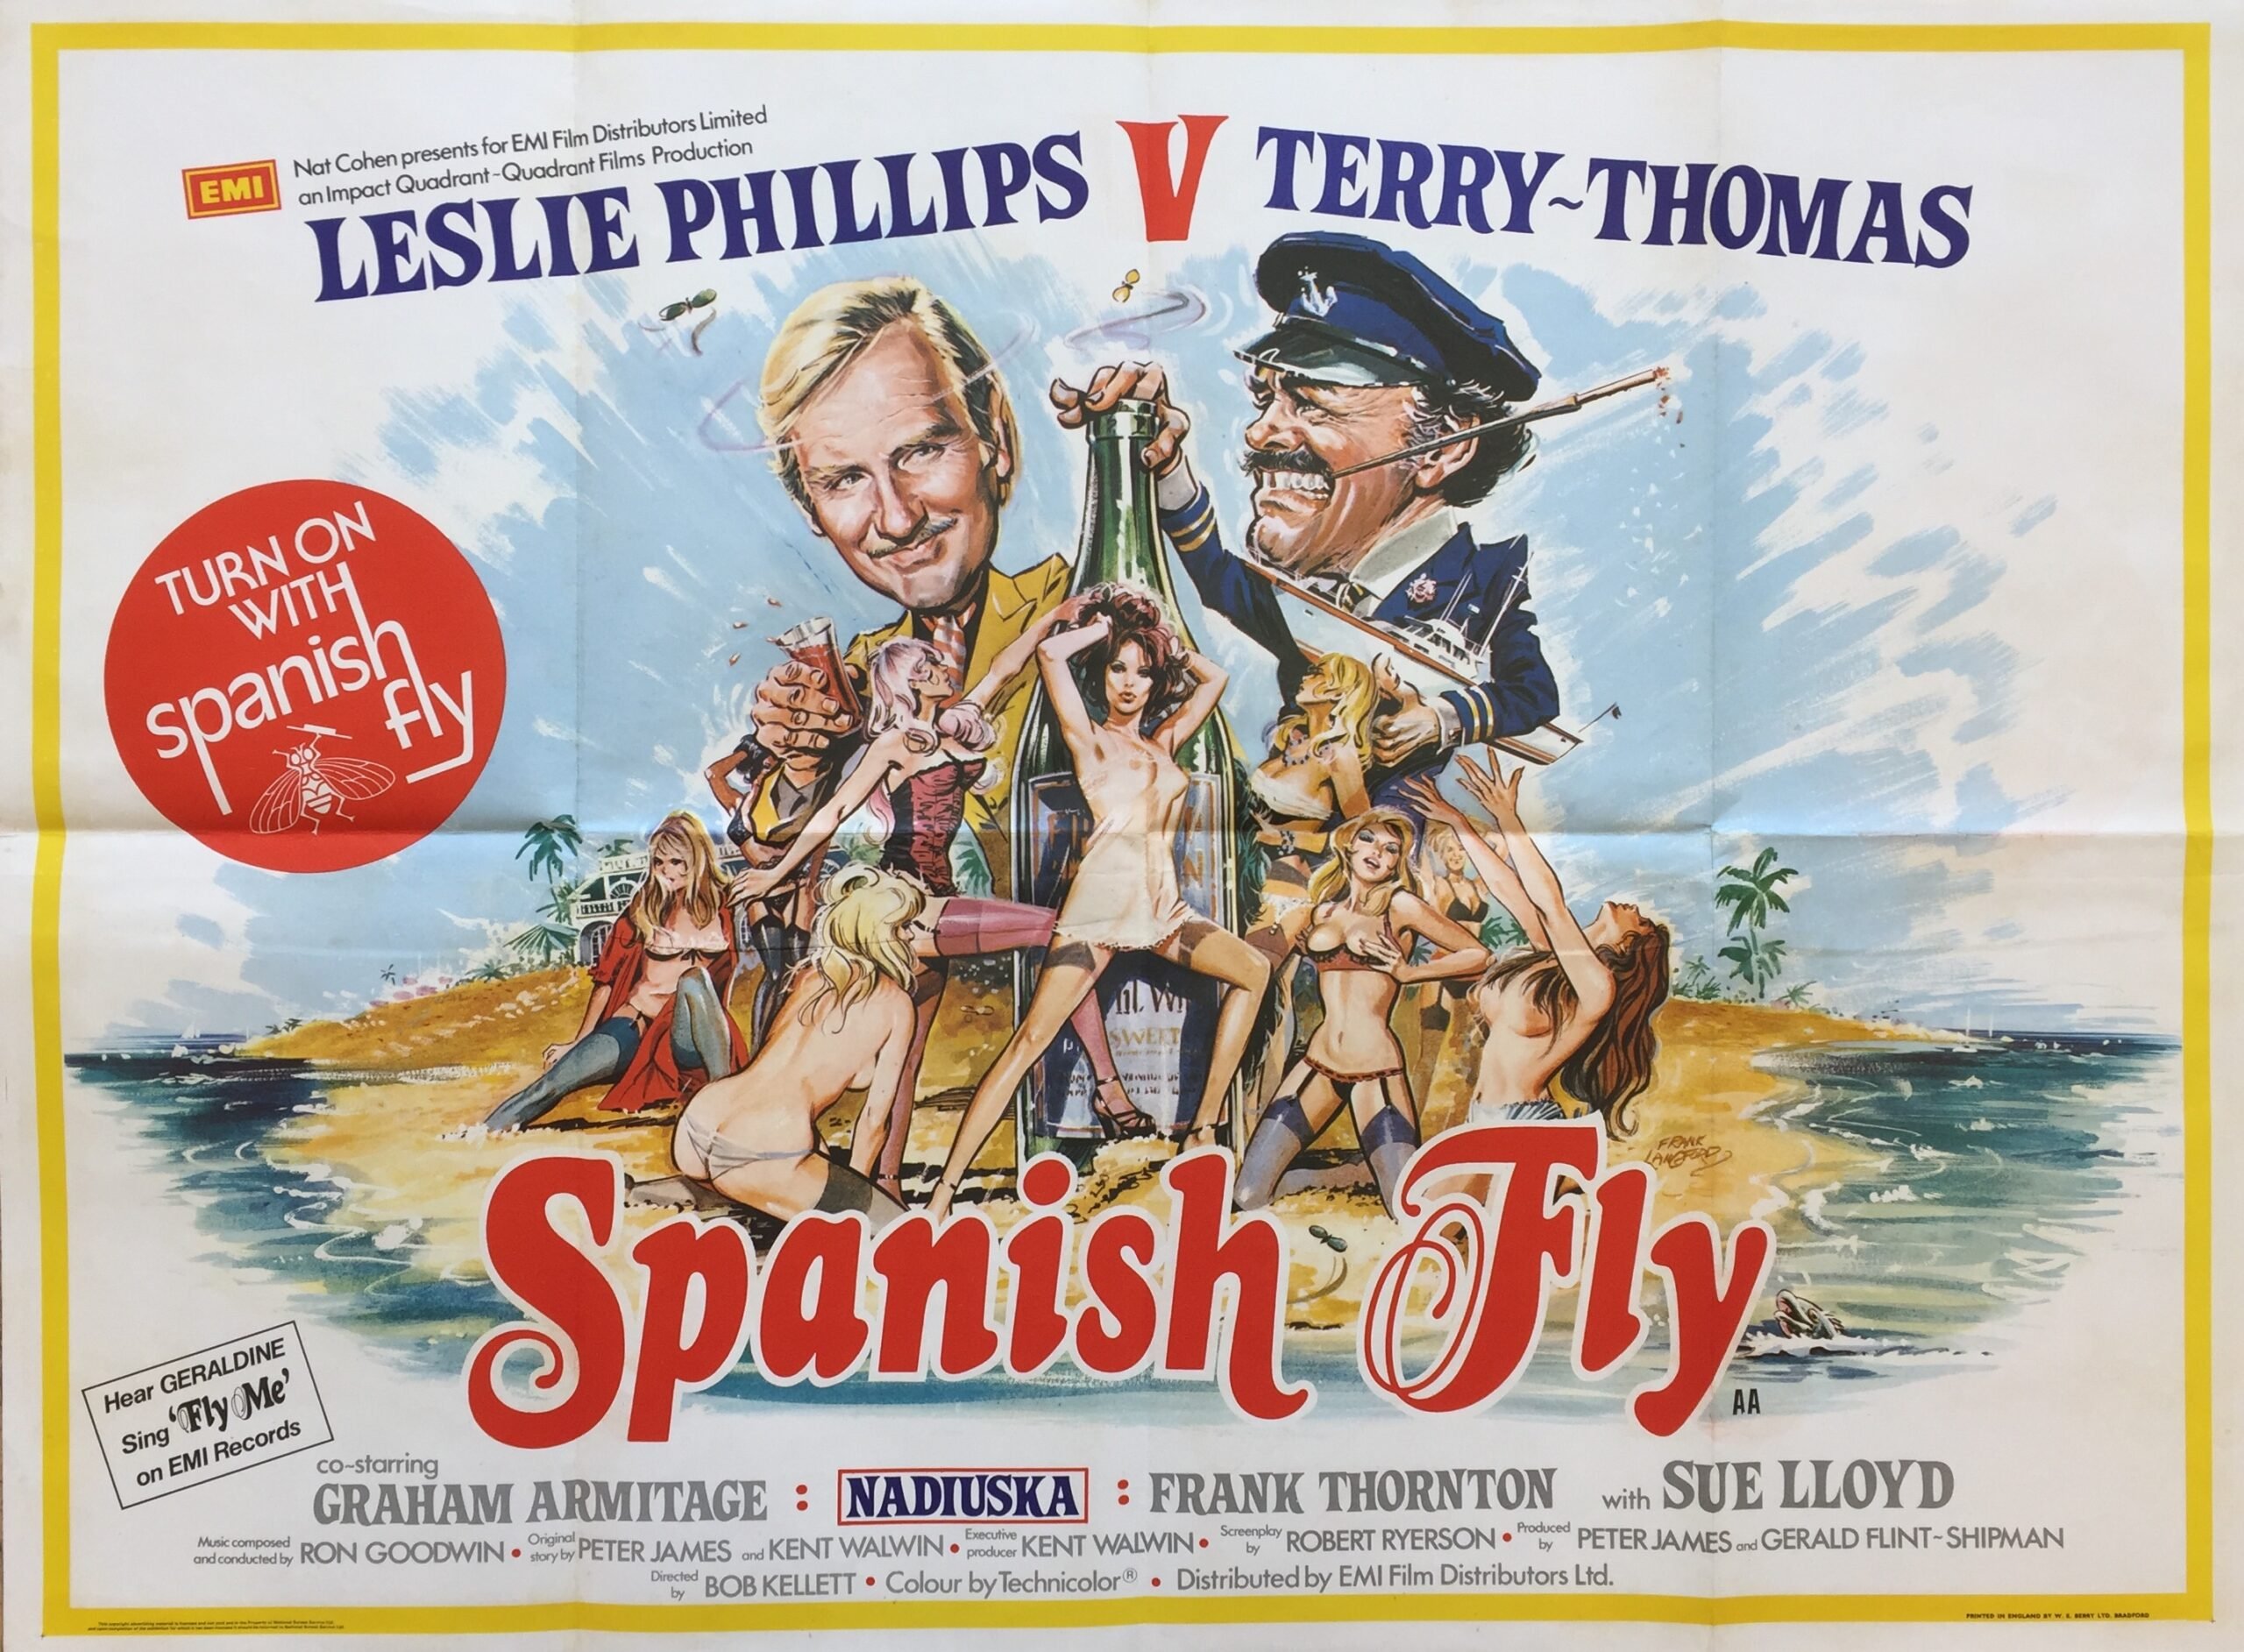 Original vintage UK cinema poster for Spanish fly